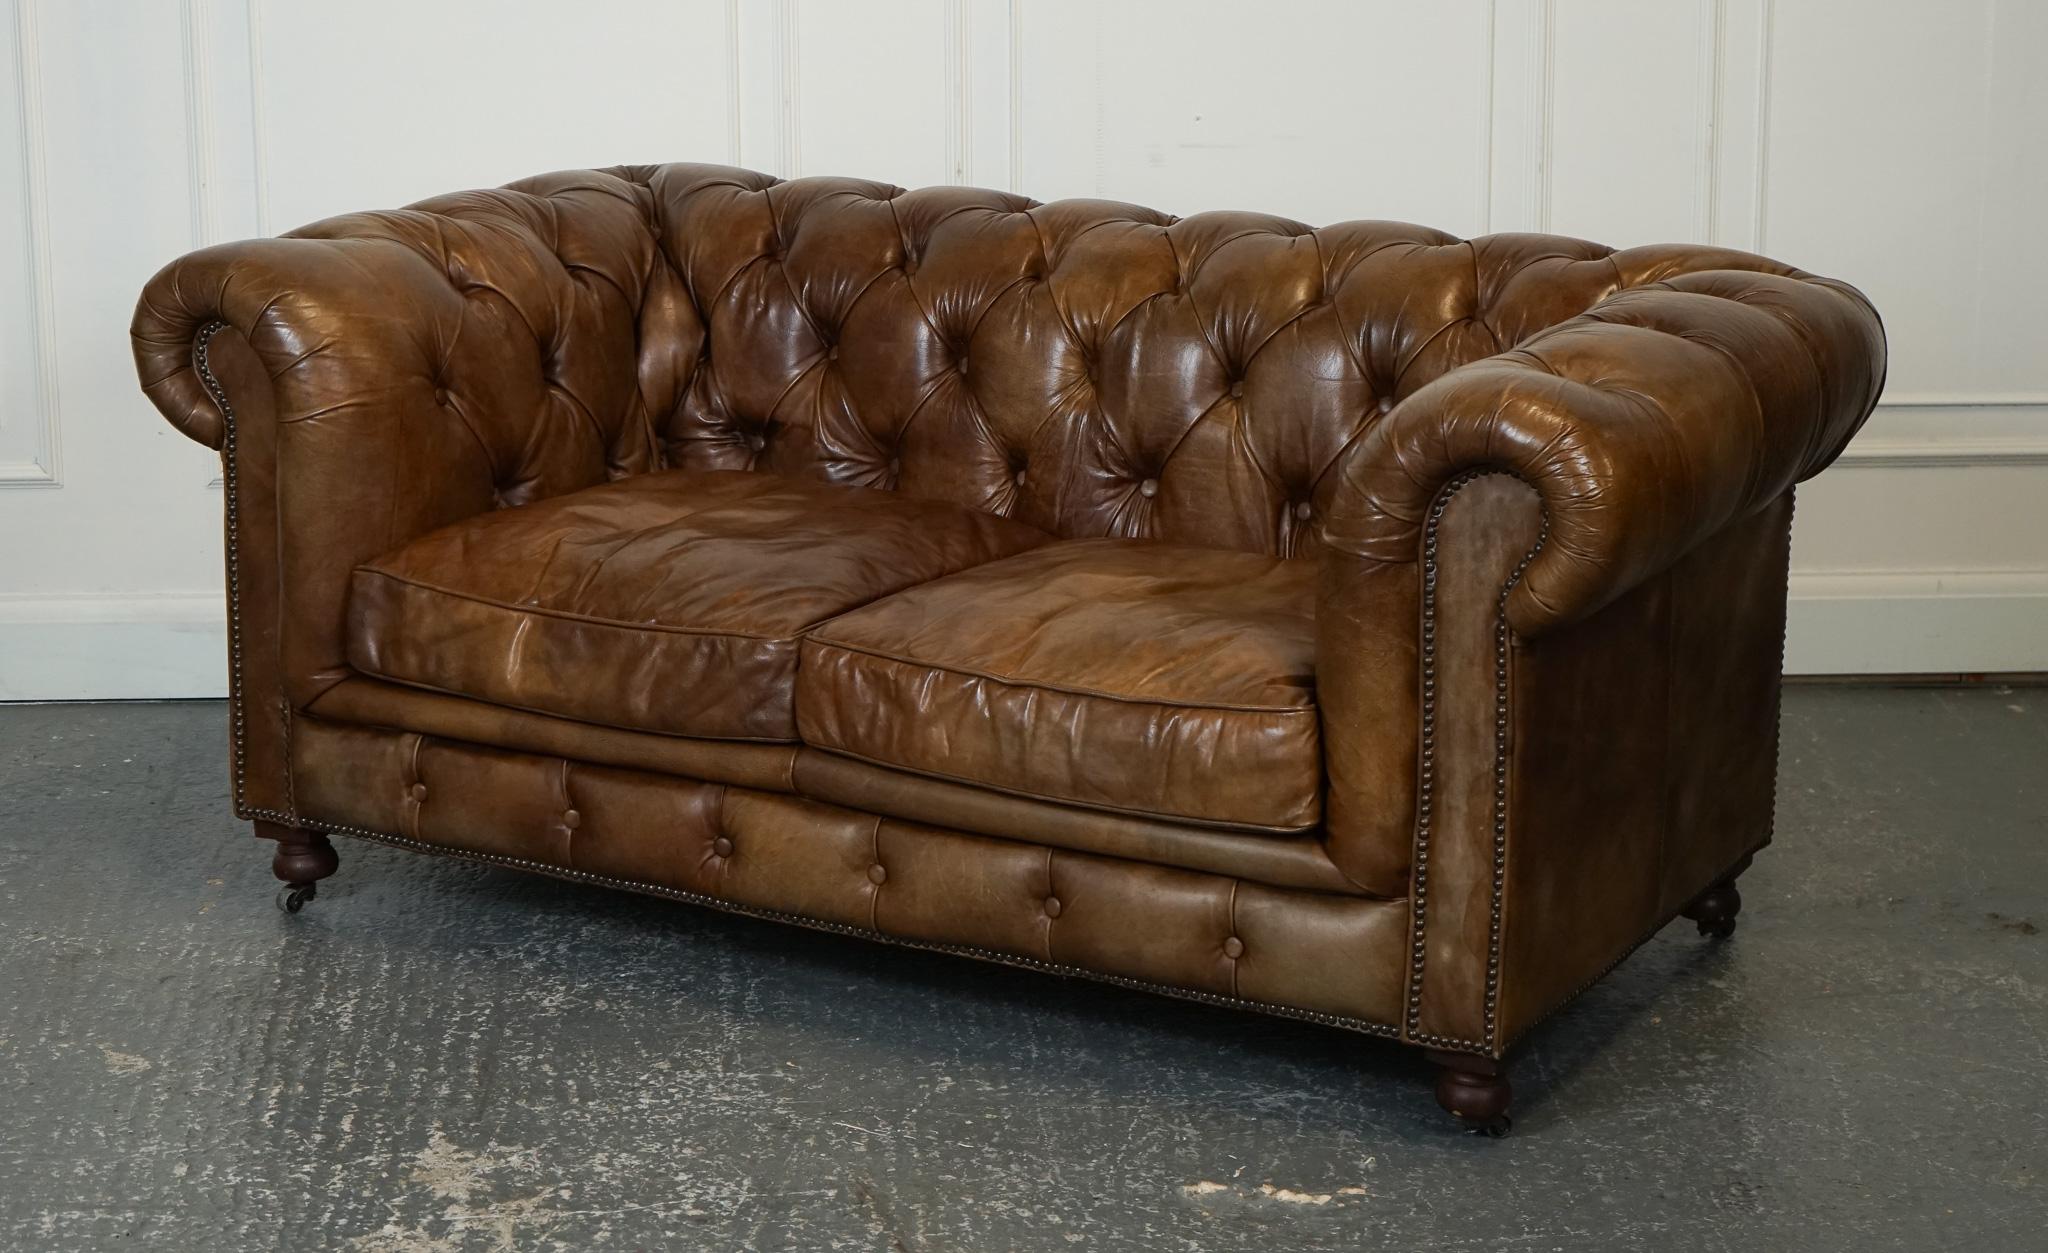 
Nous sommes ravis d'offrir à la vente ce magnifique canapé en cuir Chesterfield marron Heritage By Halo.

Le magnifique canapé Chesterfield de Halo est une véritable pièce d'apparat qui respire le luxe et l'élégance. Revêtu d'un riche cuir marron,